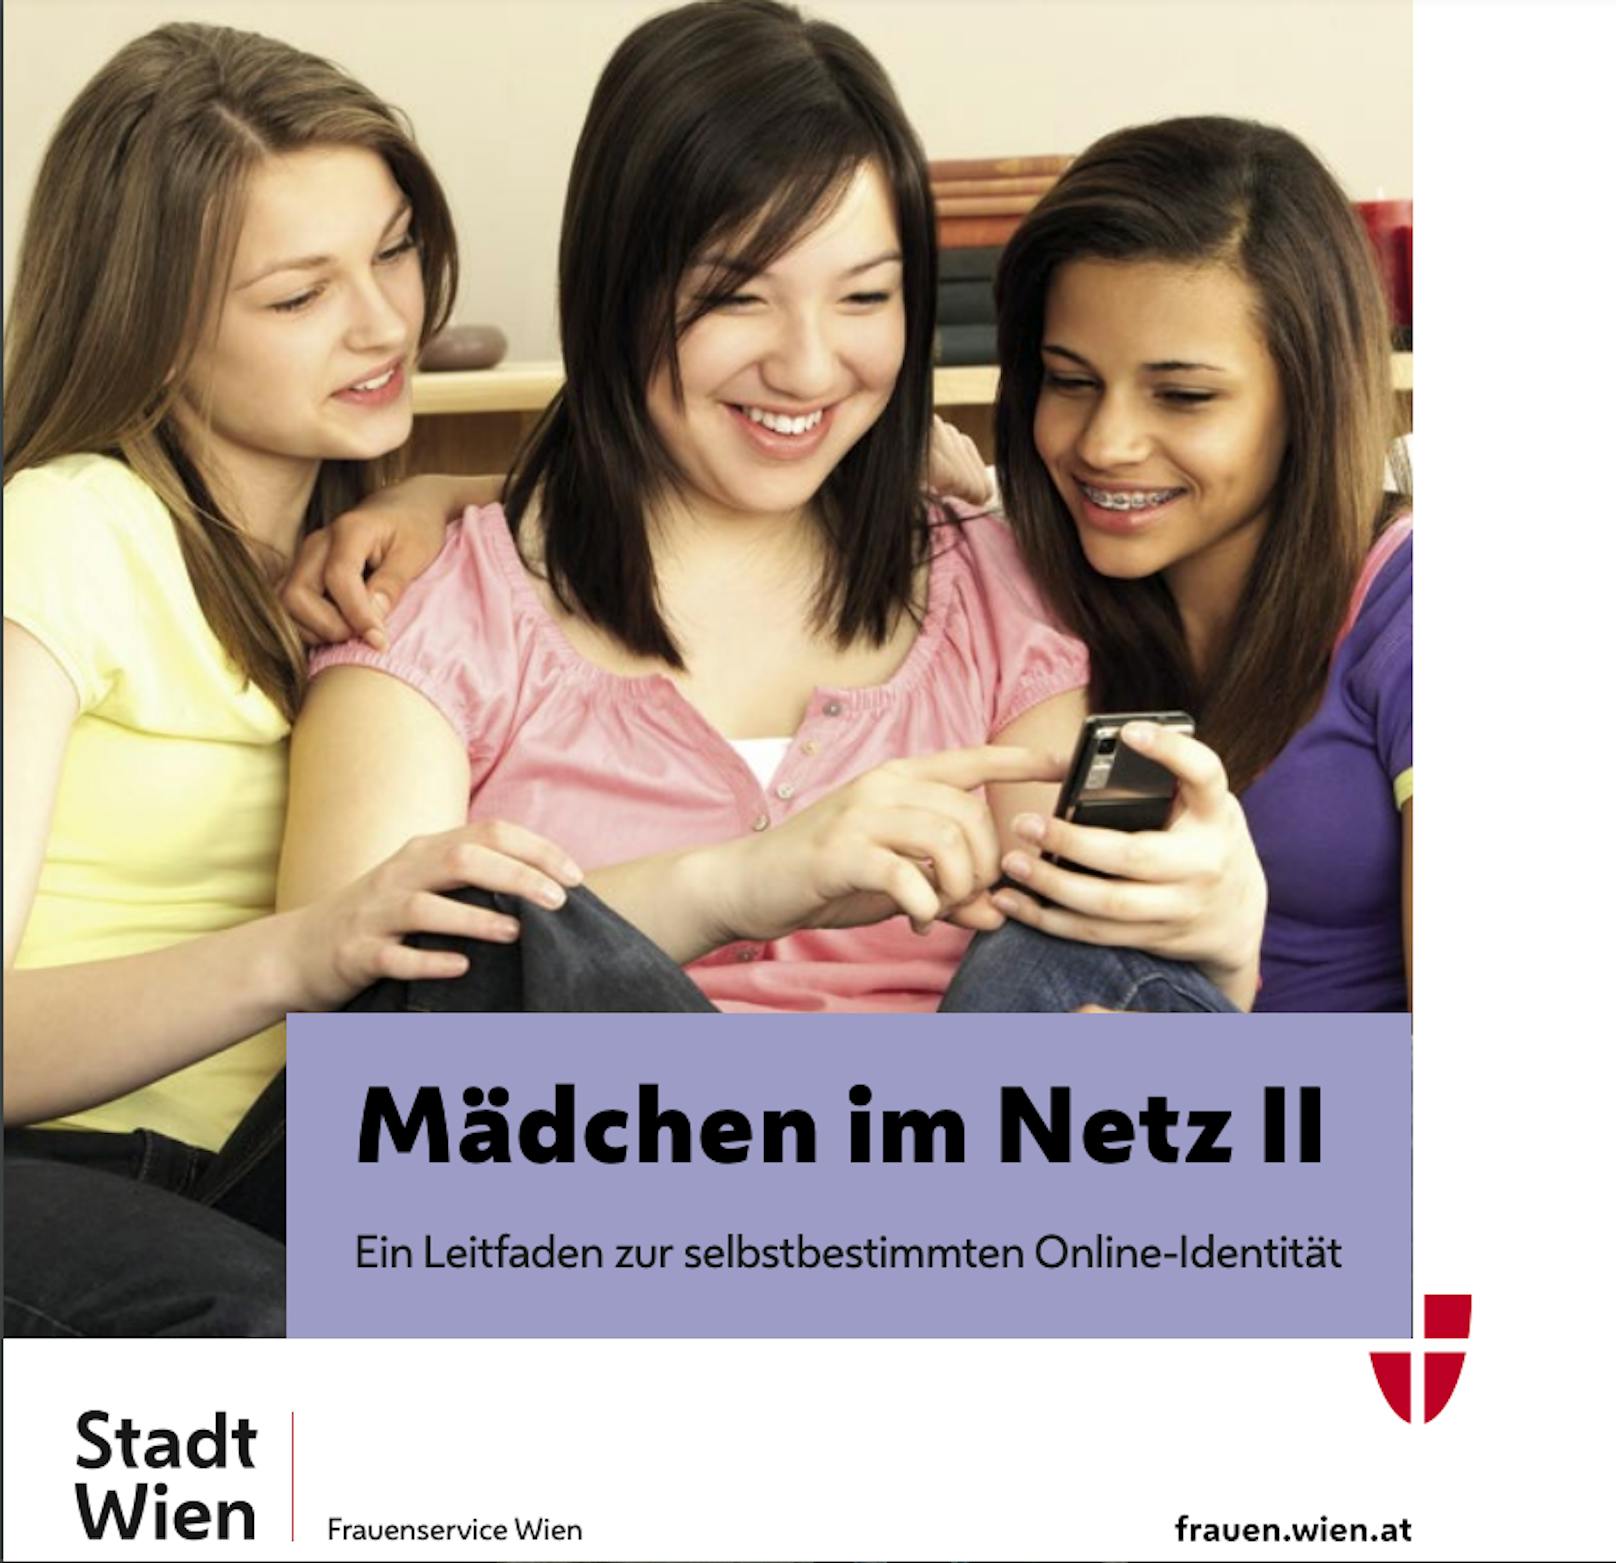 Daher veröffentlicht das Frauenservice der Stadt Wien pünktlich zum heutigen Weltmädchentag eine neue Broschüre, die Tipps für eine selbstbestimmte Online-Identität gibt.